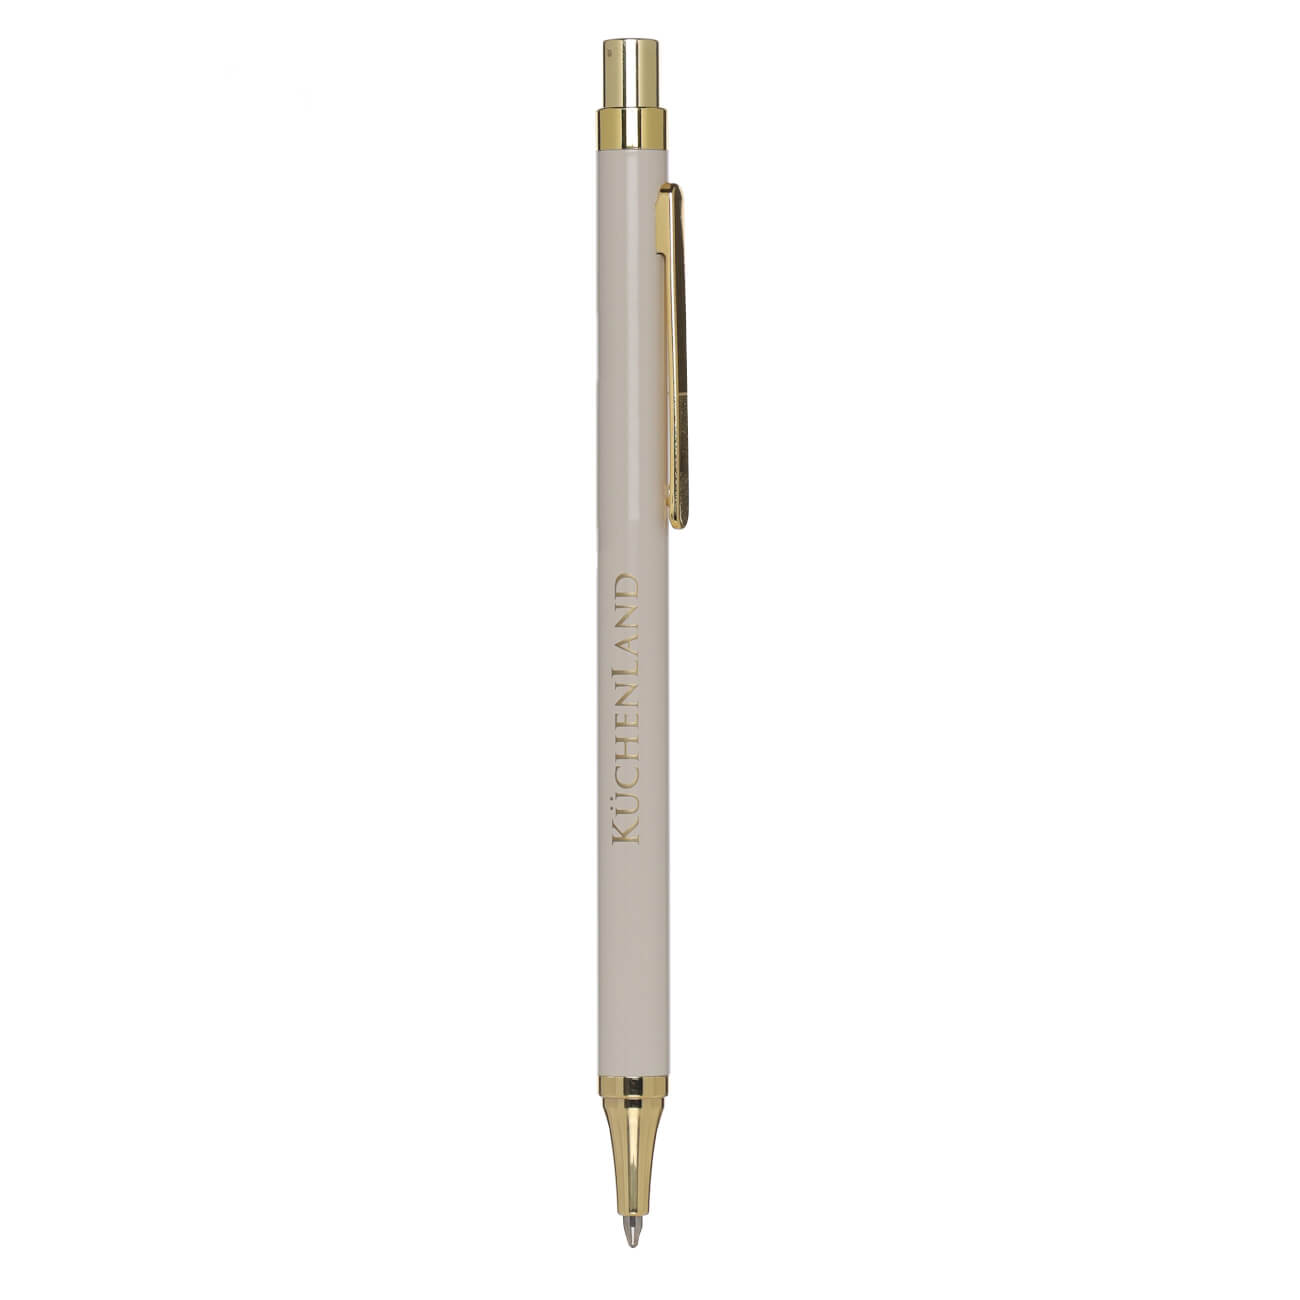 Ручка шариковая, 14 см, металл/пластик, бежевая, Eclipse ручка скоба cappio pc183 96 мм бронза